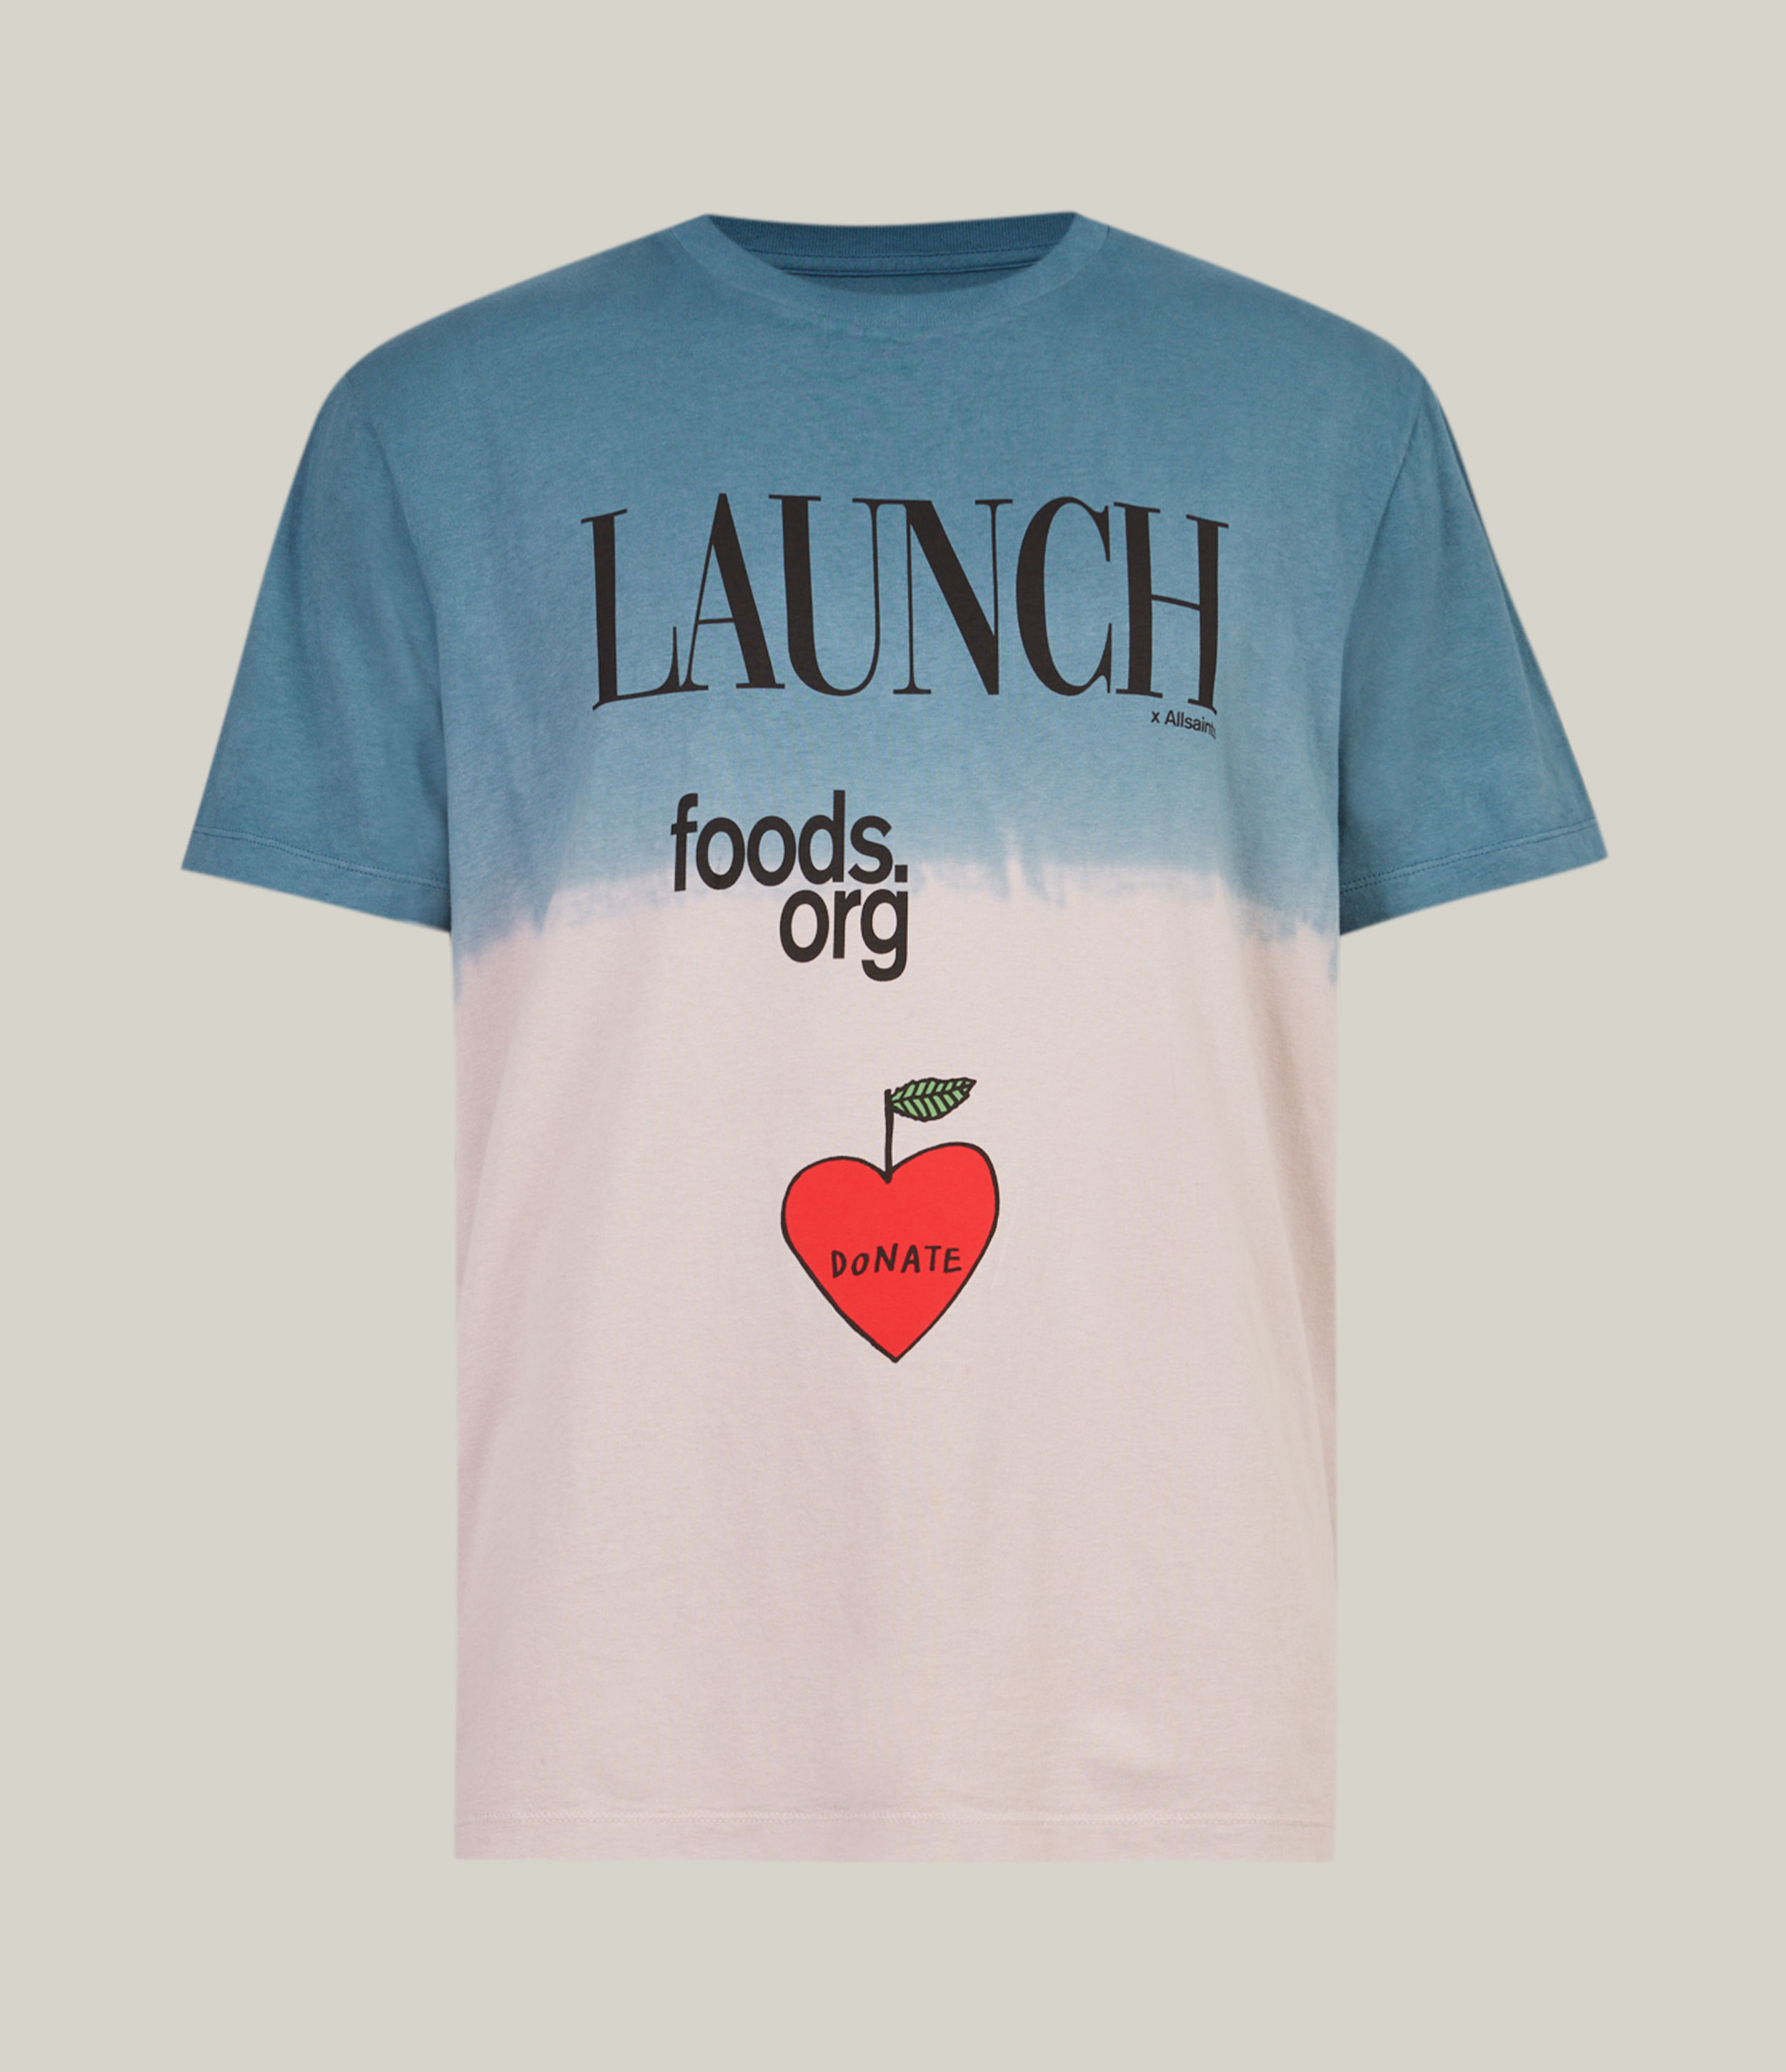 AllSaints Men's X Launch Foods Unisex Charity T-Shirt, Purple/Blue/Red, Size: L